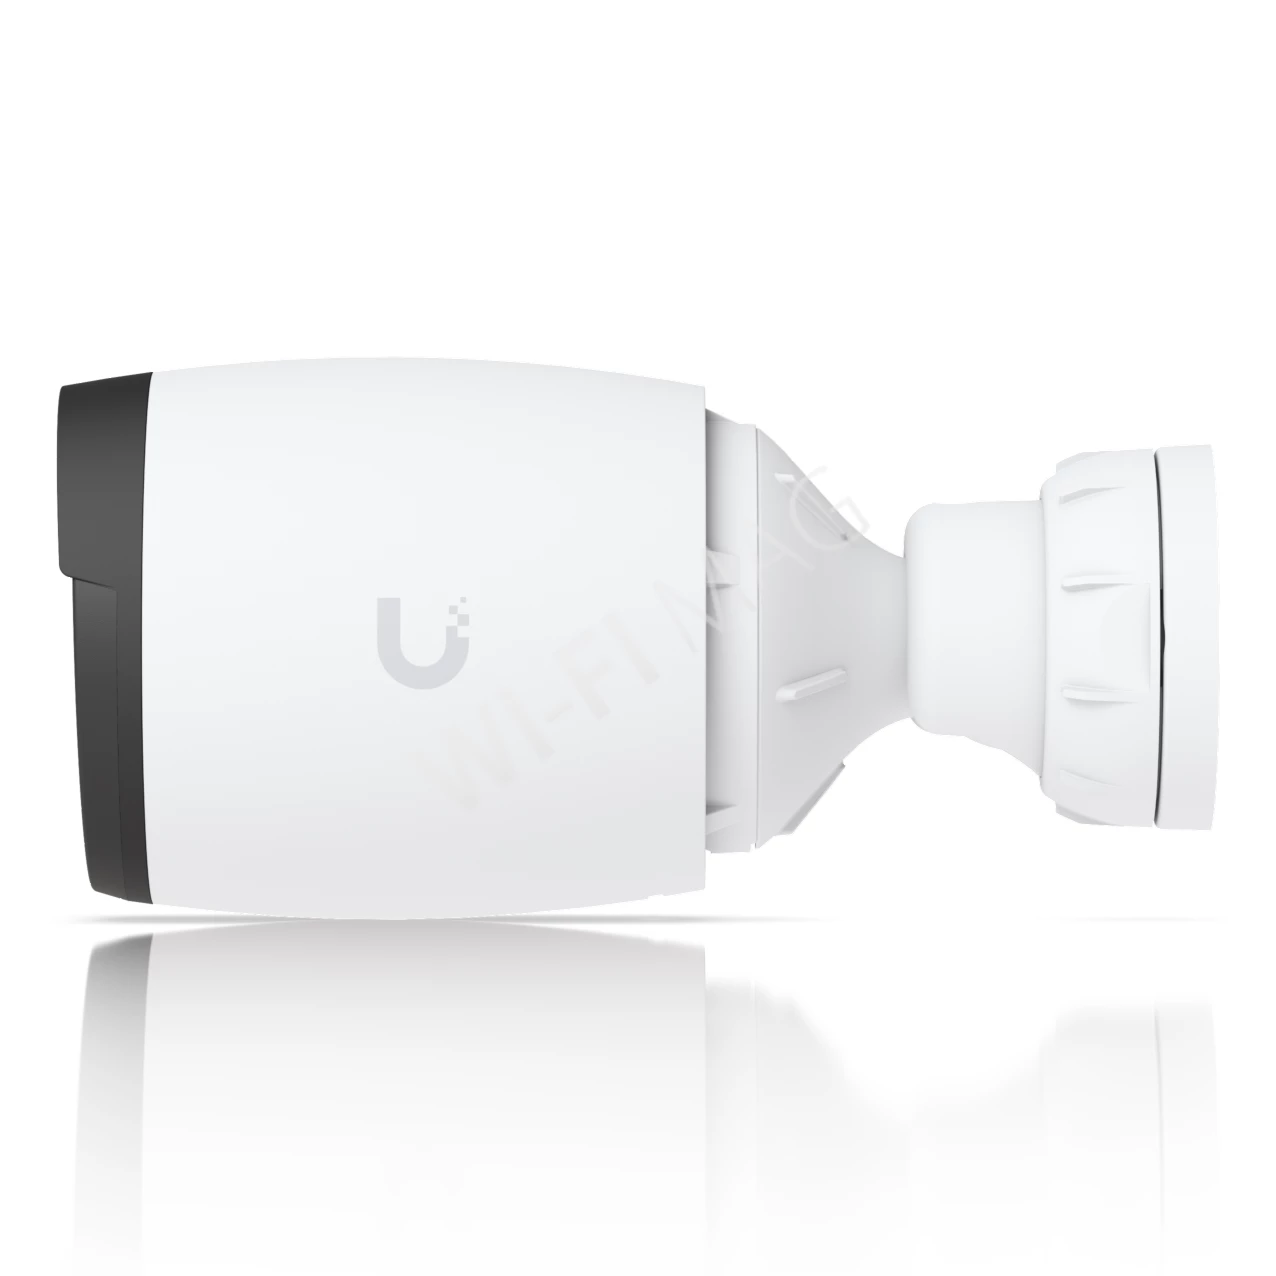 Ubiquiti UniFi Video Camera AI Professional White, 8 Мп белая уличная с искусственным интеллектом IP-видеокамера